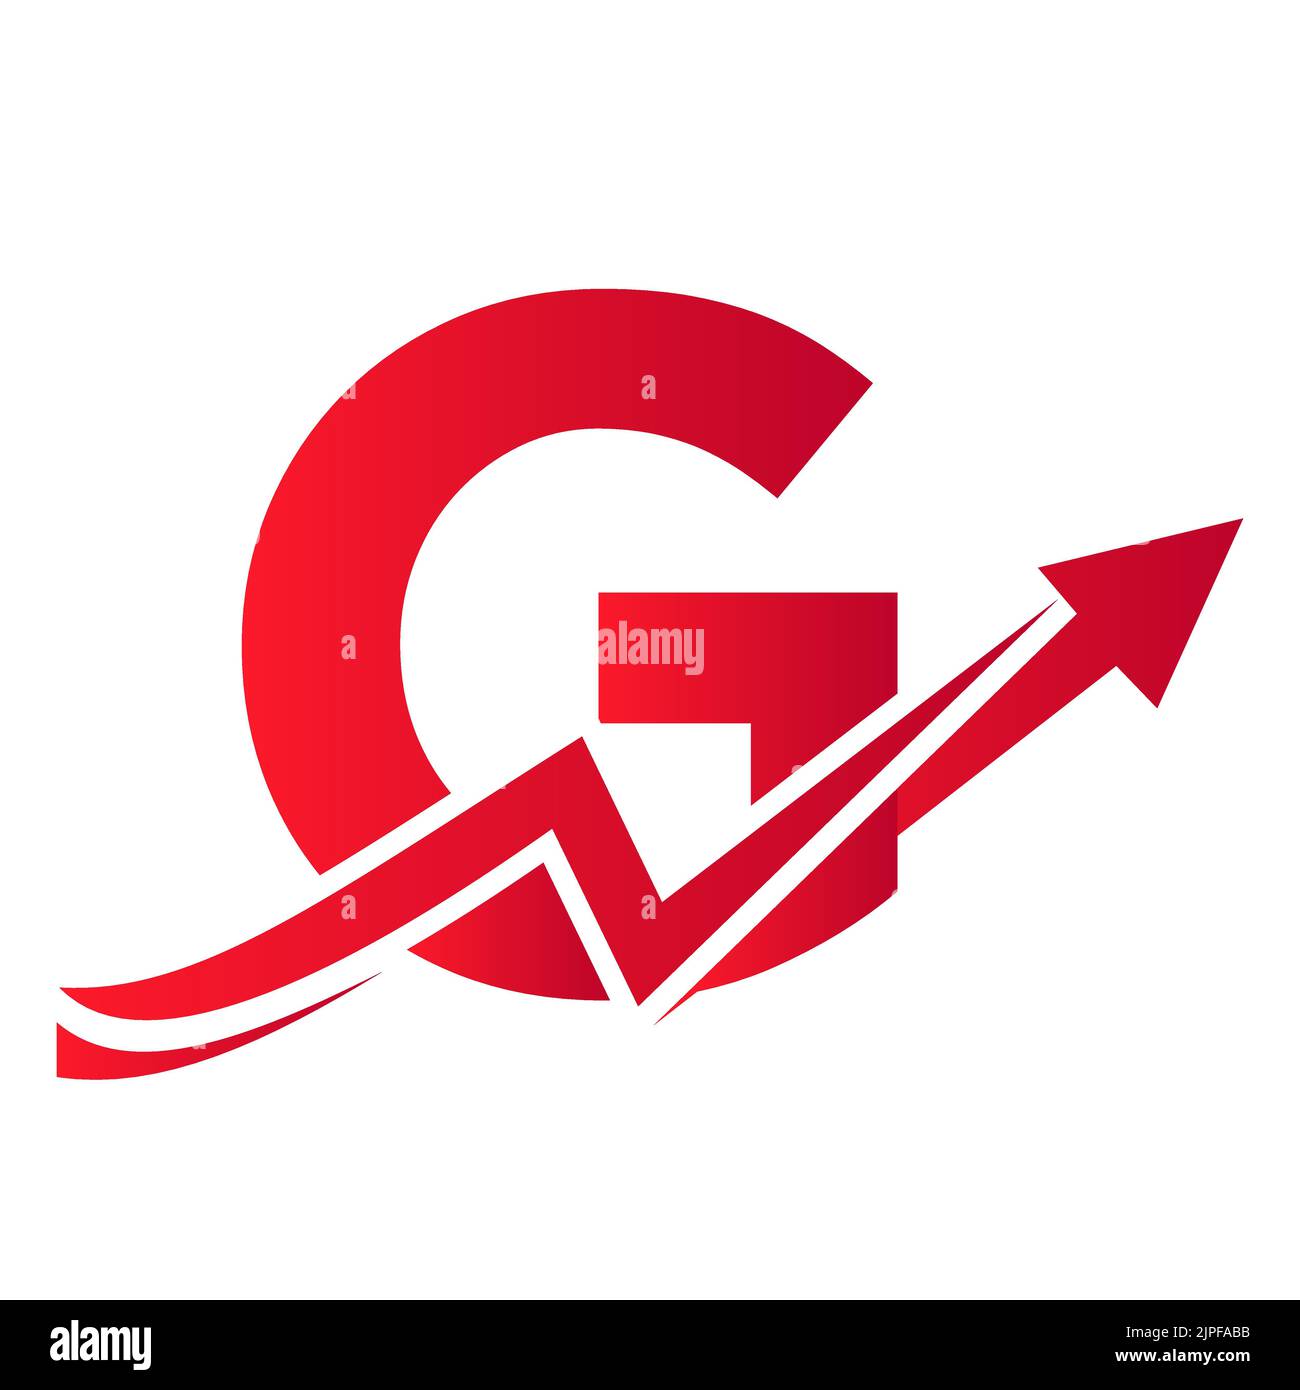 Lettre G logo financier avec flèche de croissance. Logo économique Sign On Alphabet G Vector Template Illustration de Vecteur